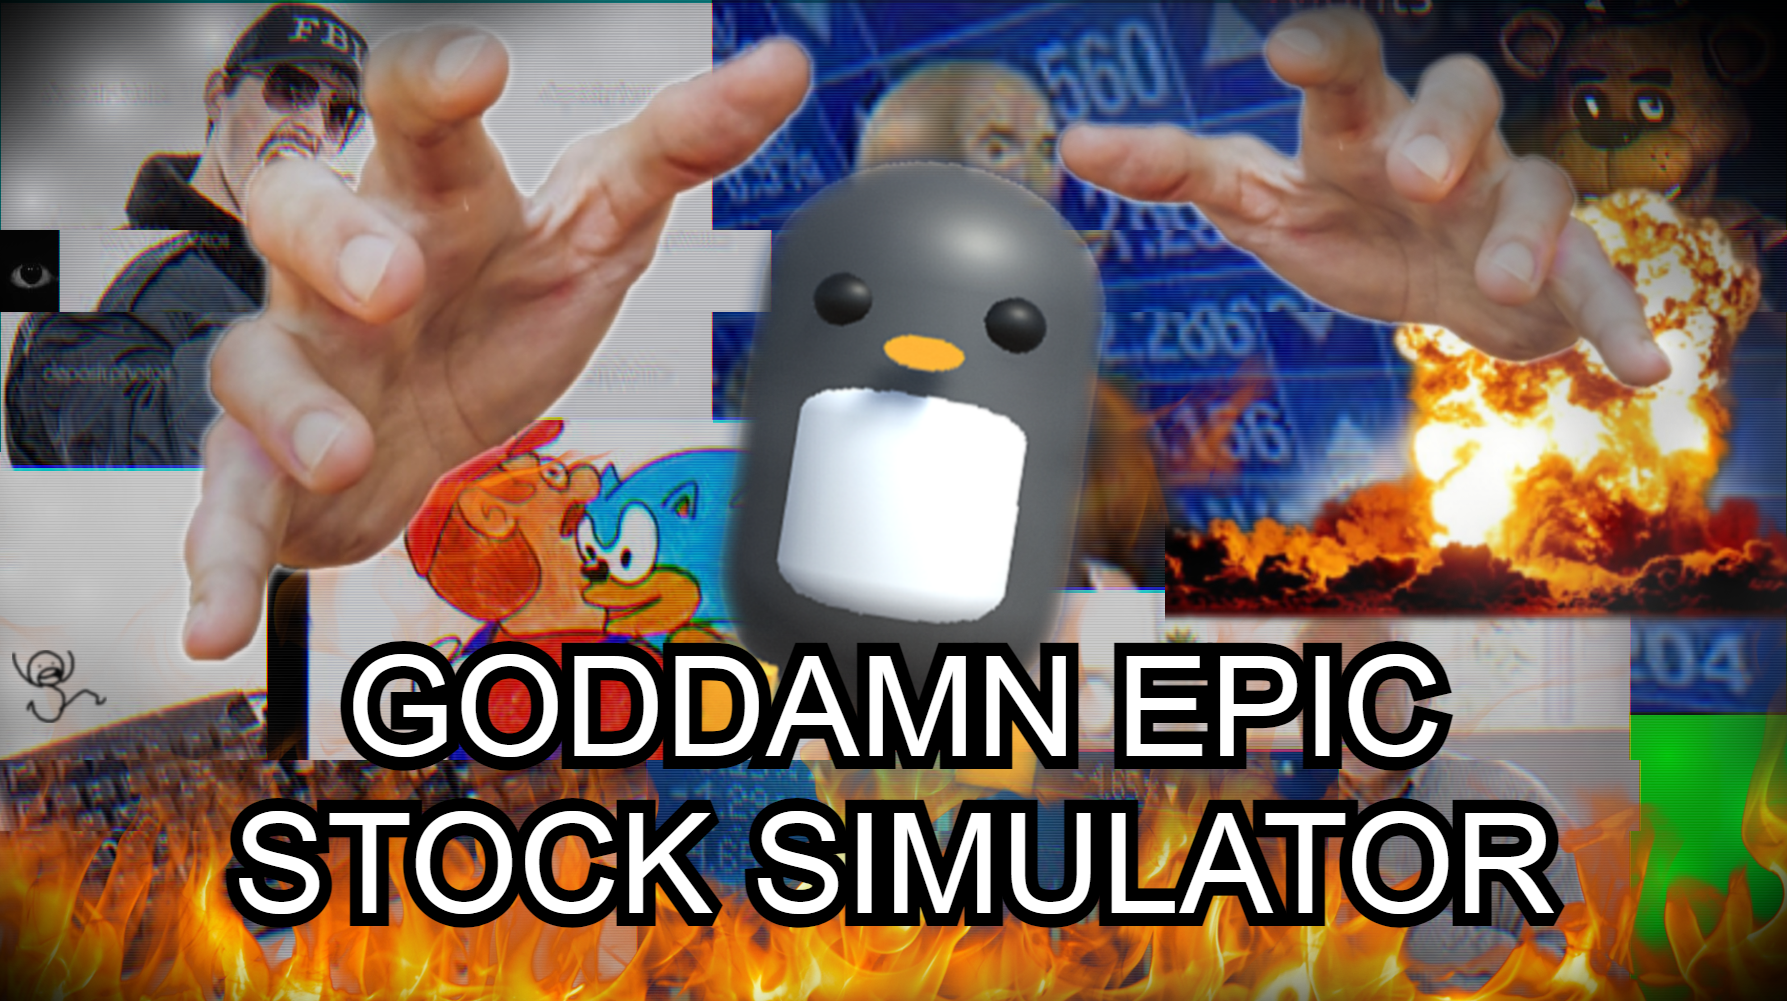 Goddamn Epic Stock Simulator